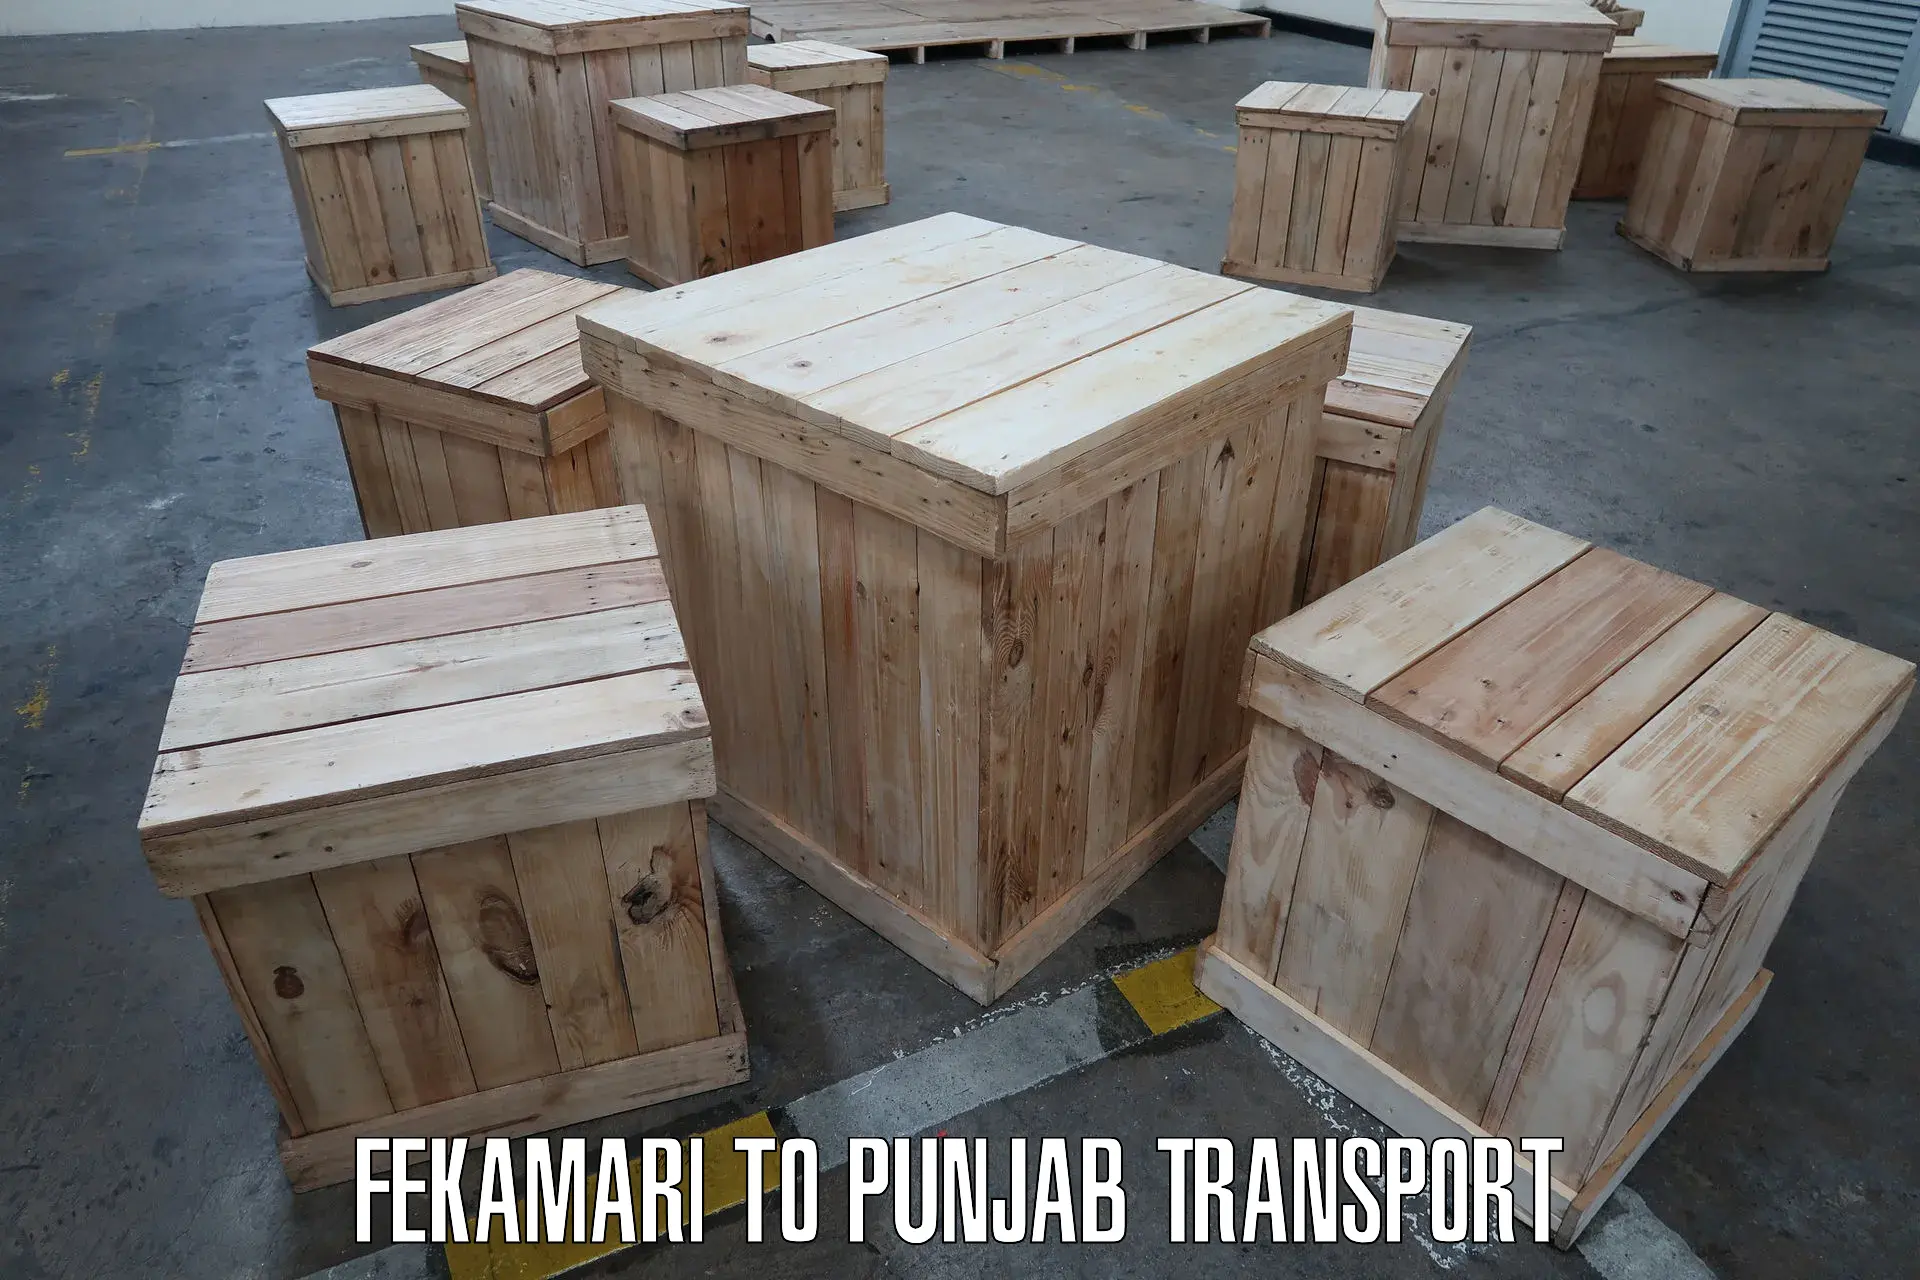 Furniture transport service Fekamari to Patiala